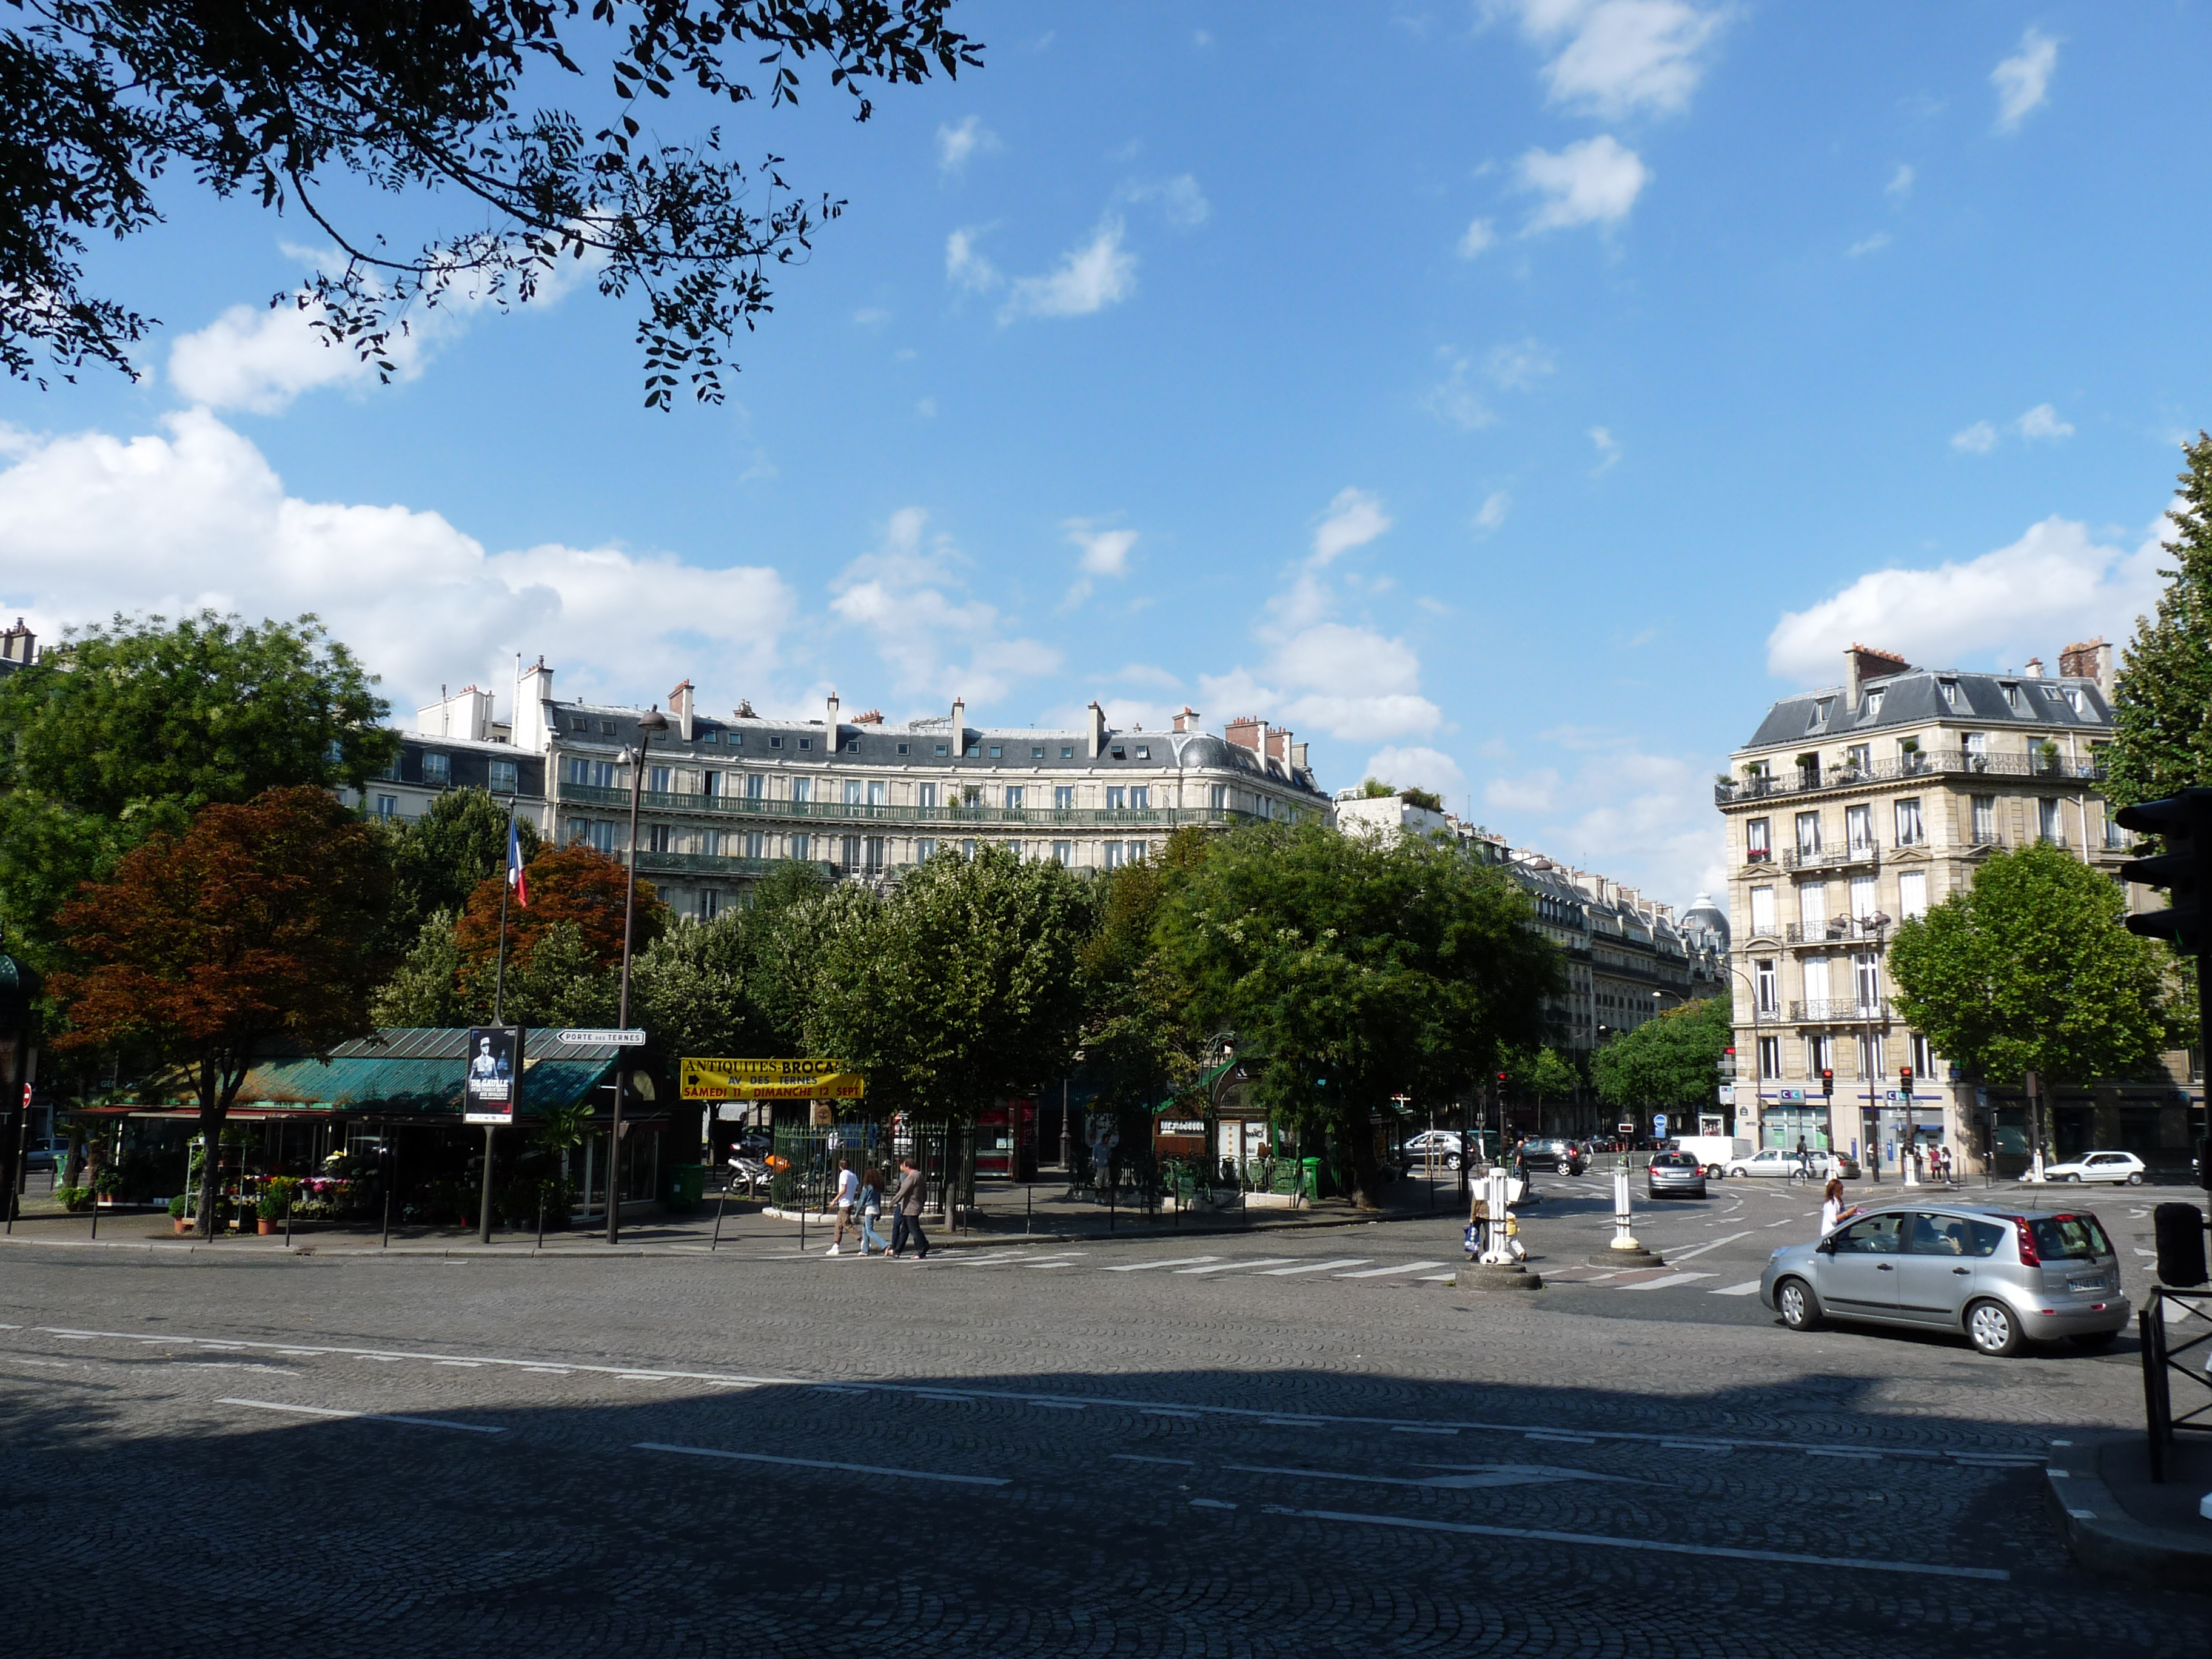 File:Paris place des ternes.jpg - Wikimedia Commons